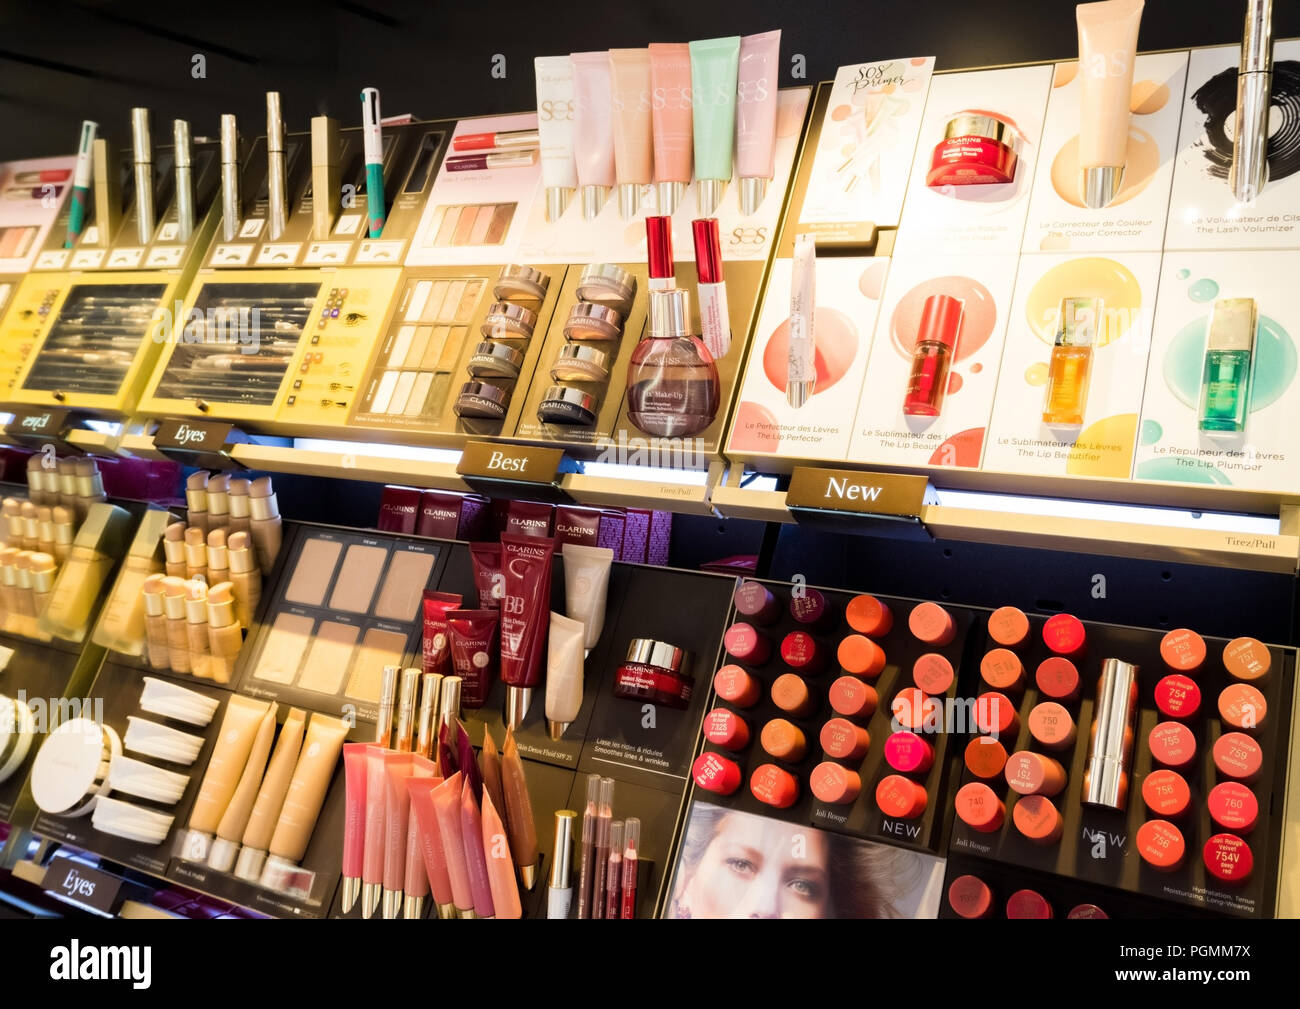 Londres, Royaume-Uni - 31 août 2018:parfum et cosmétiques Clarins maquillage  luxury collection dans un magasin. Boutique élégant Photo Stock - Alamy